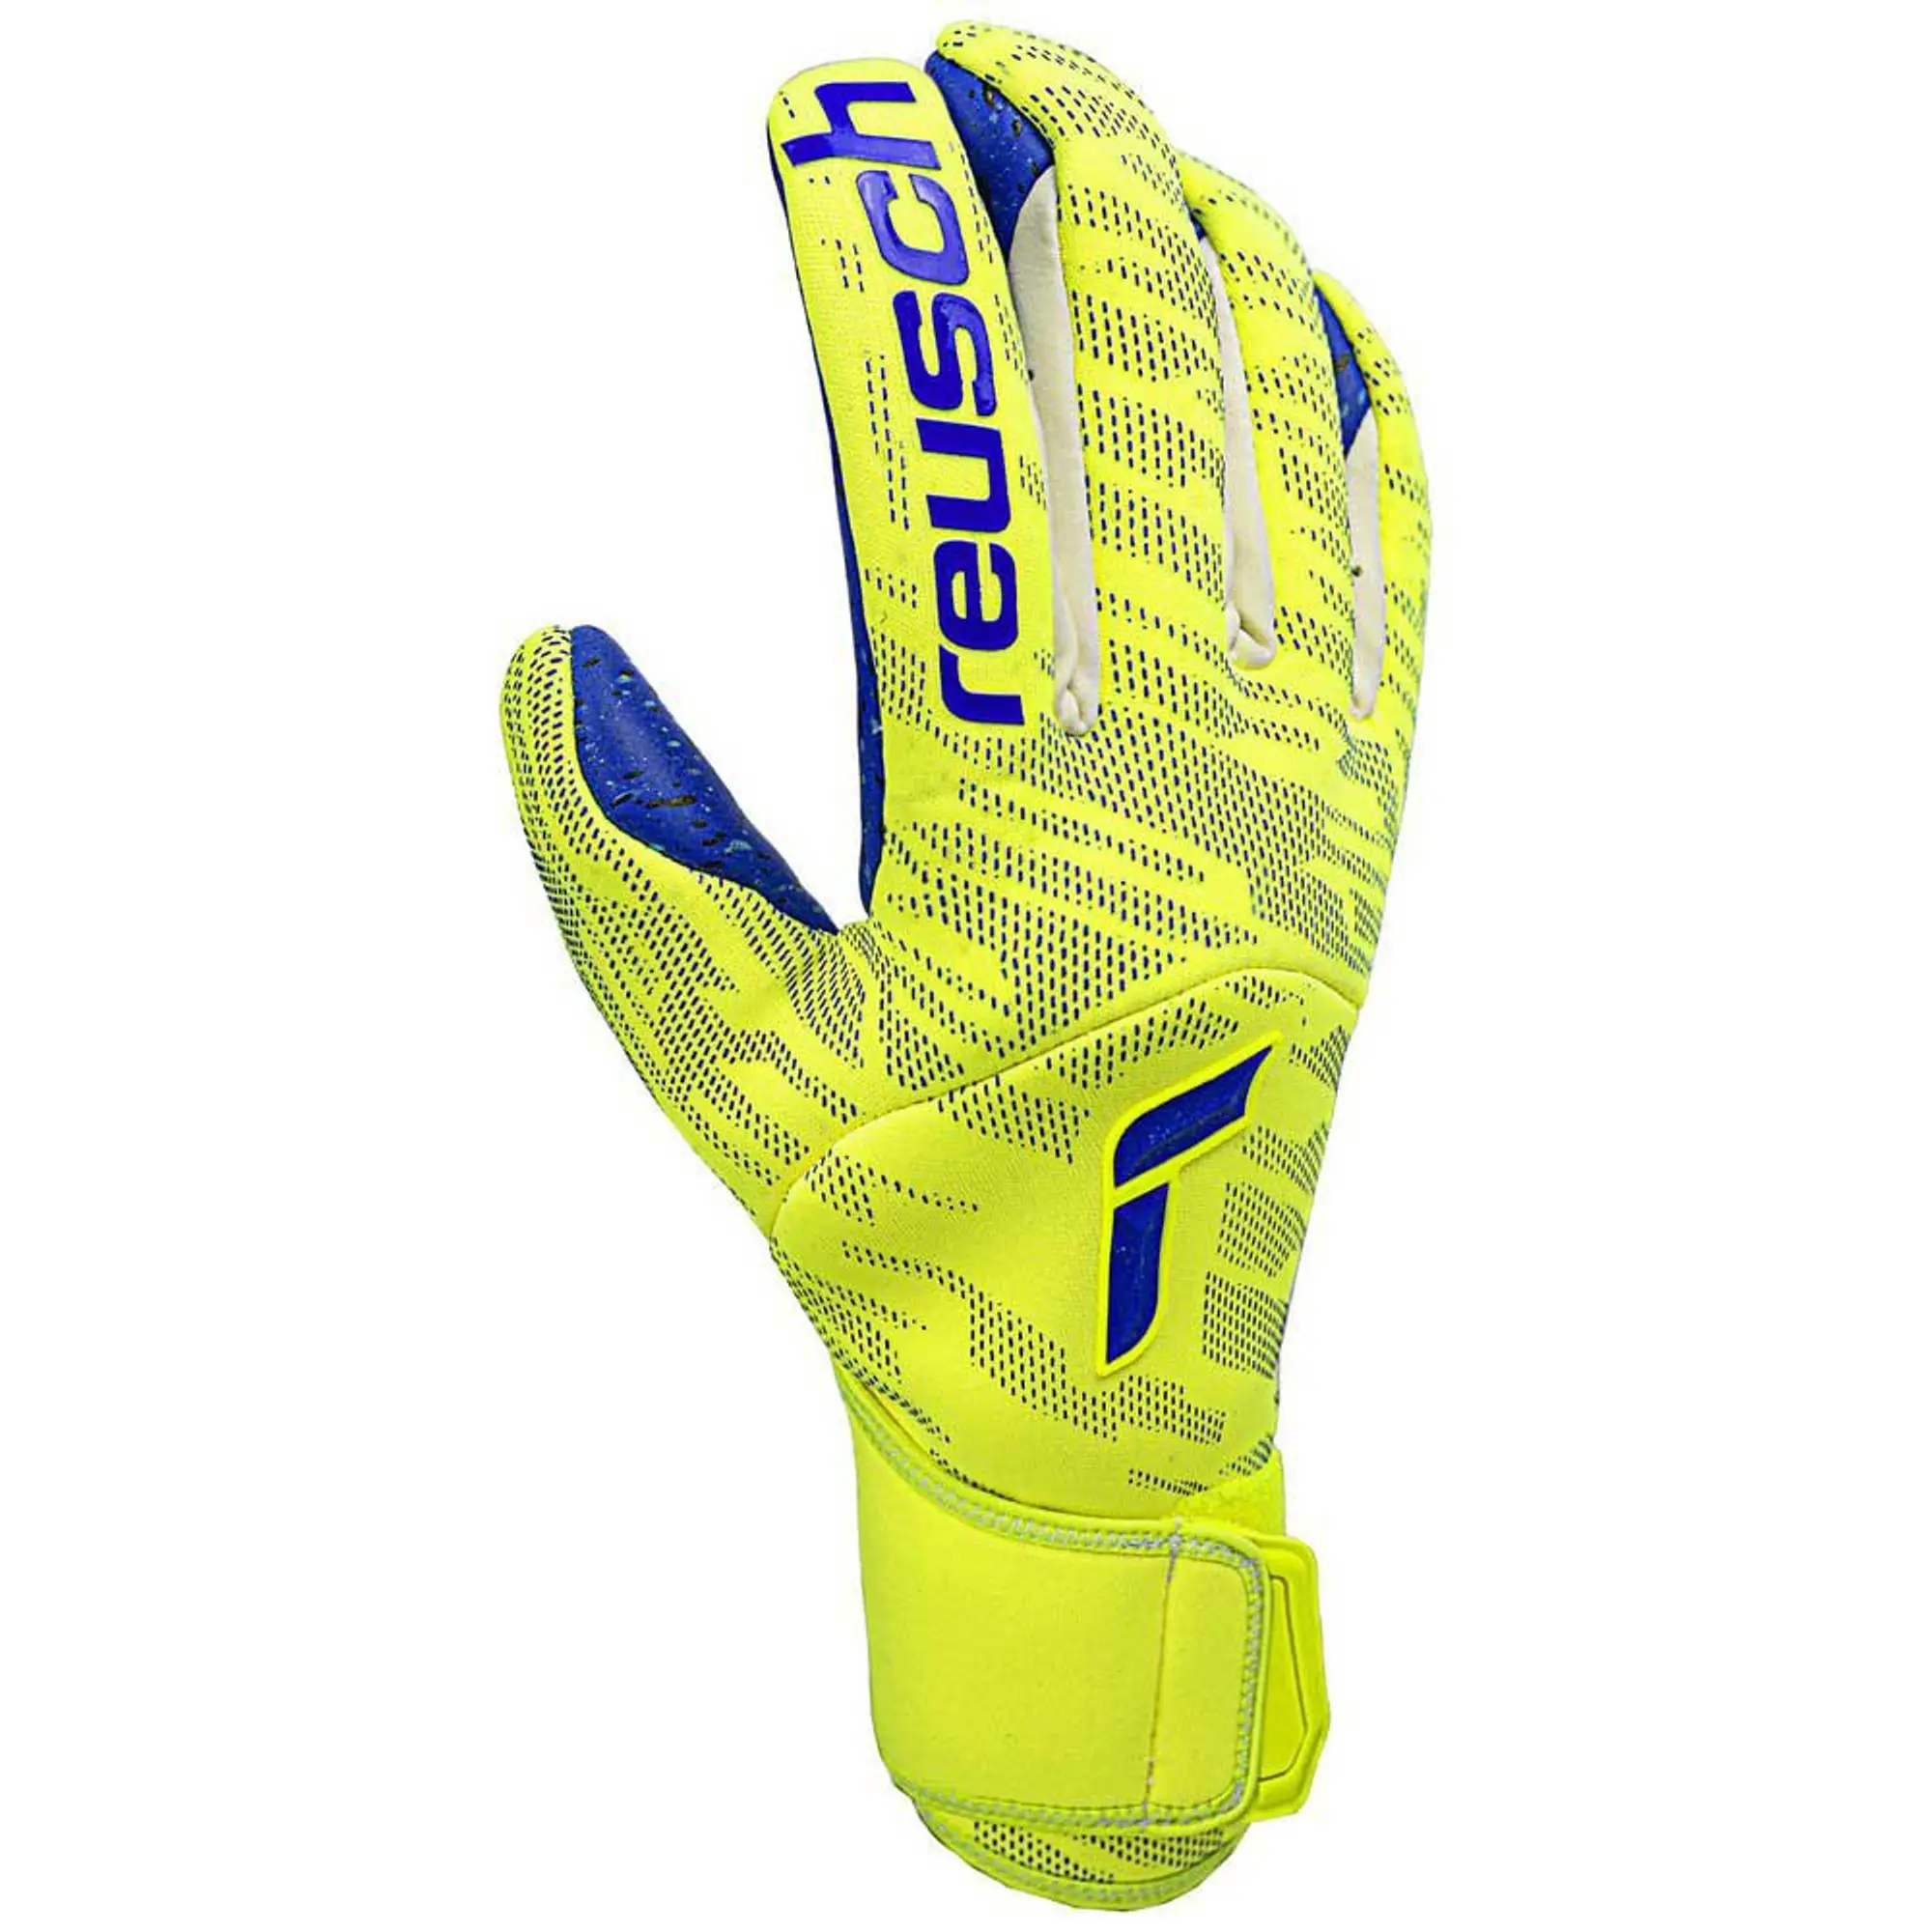 Reusch Pure Contact Fusion Goalkeeper Gloves  - Yellow,Blue